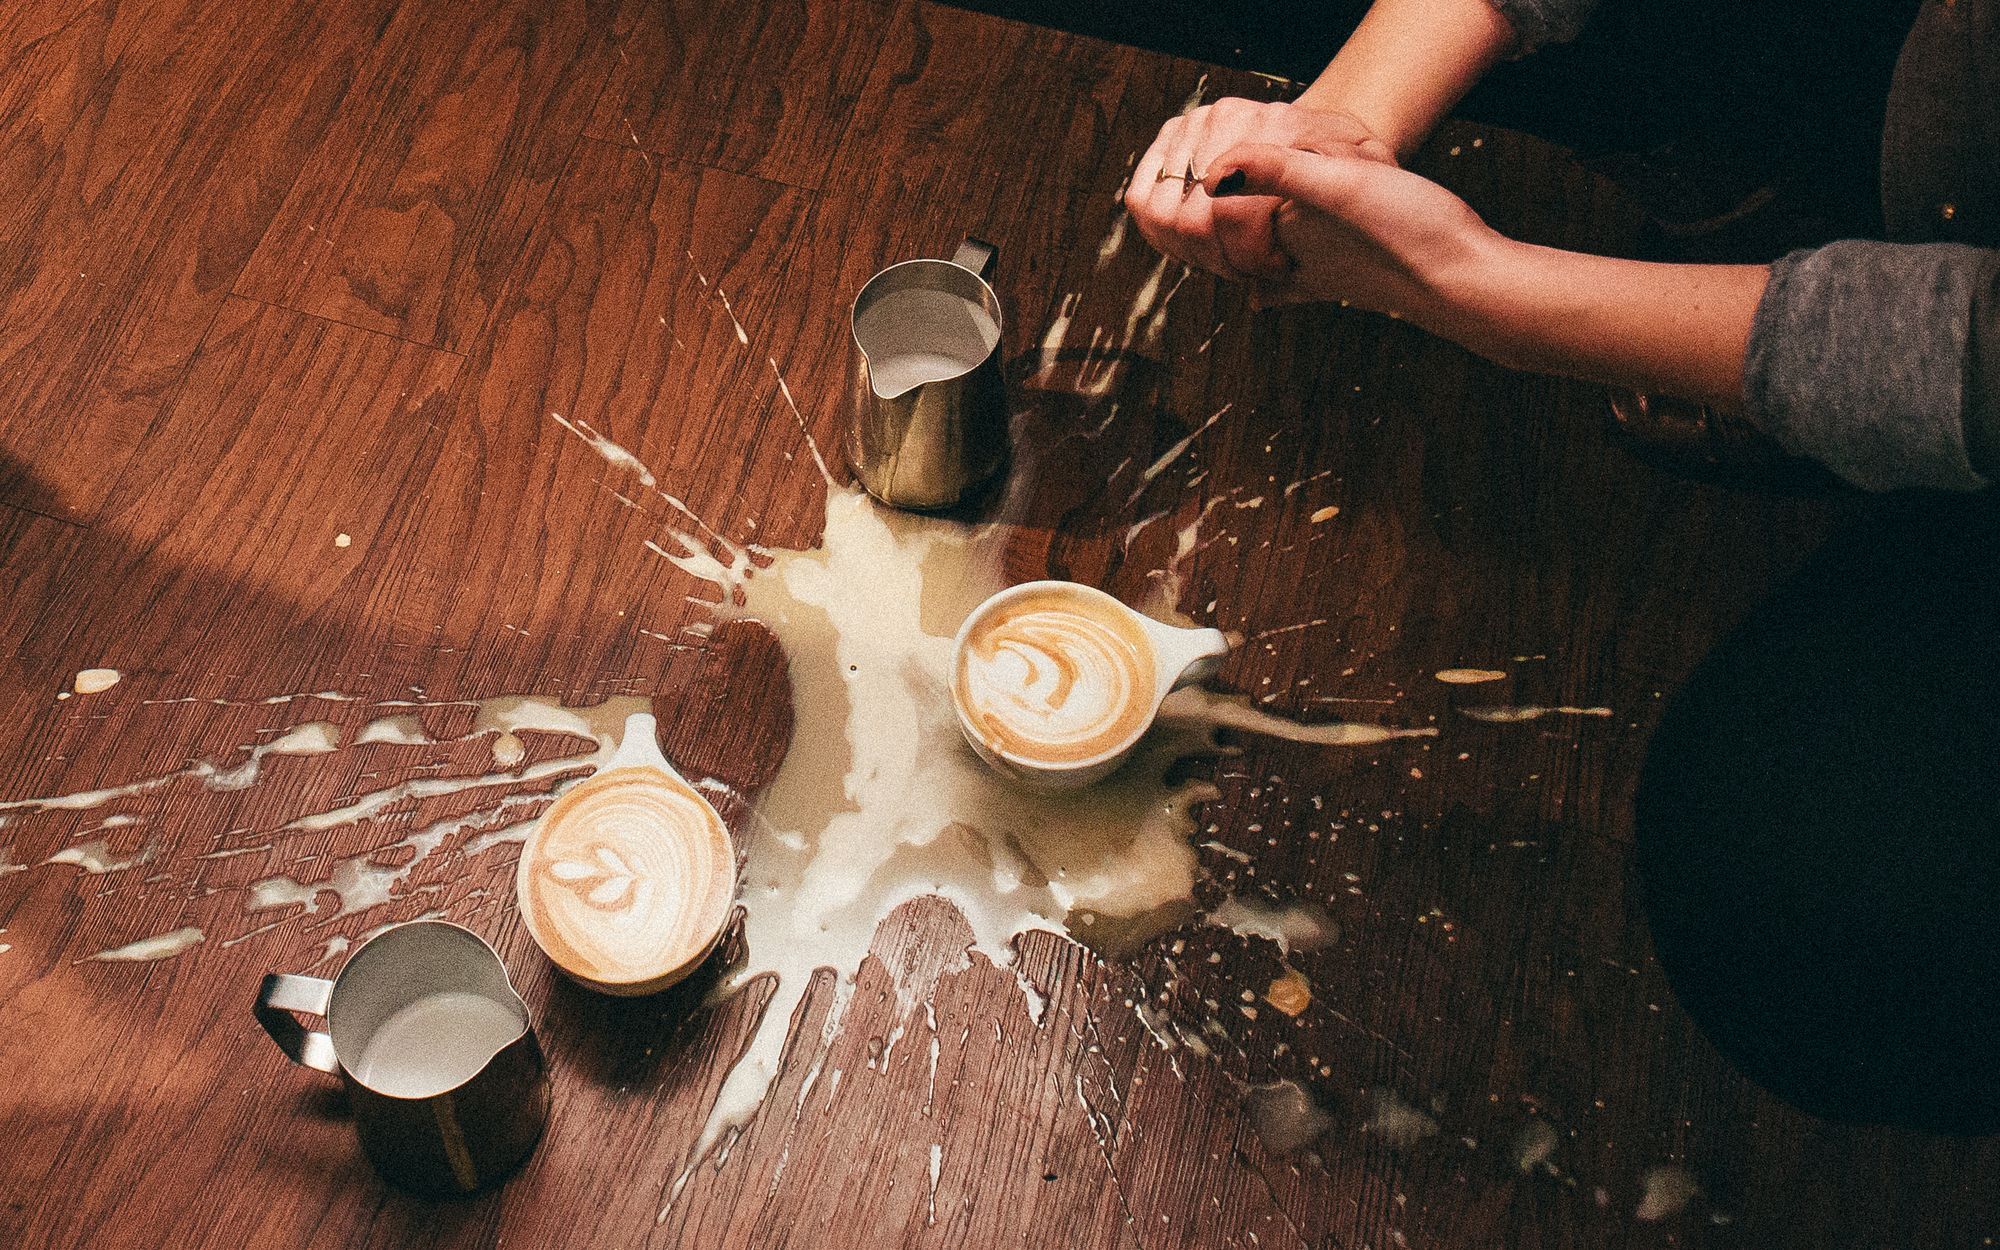 spilled latte